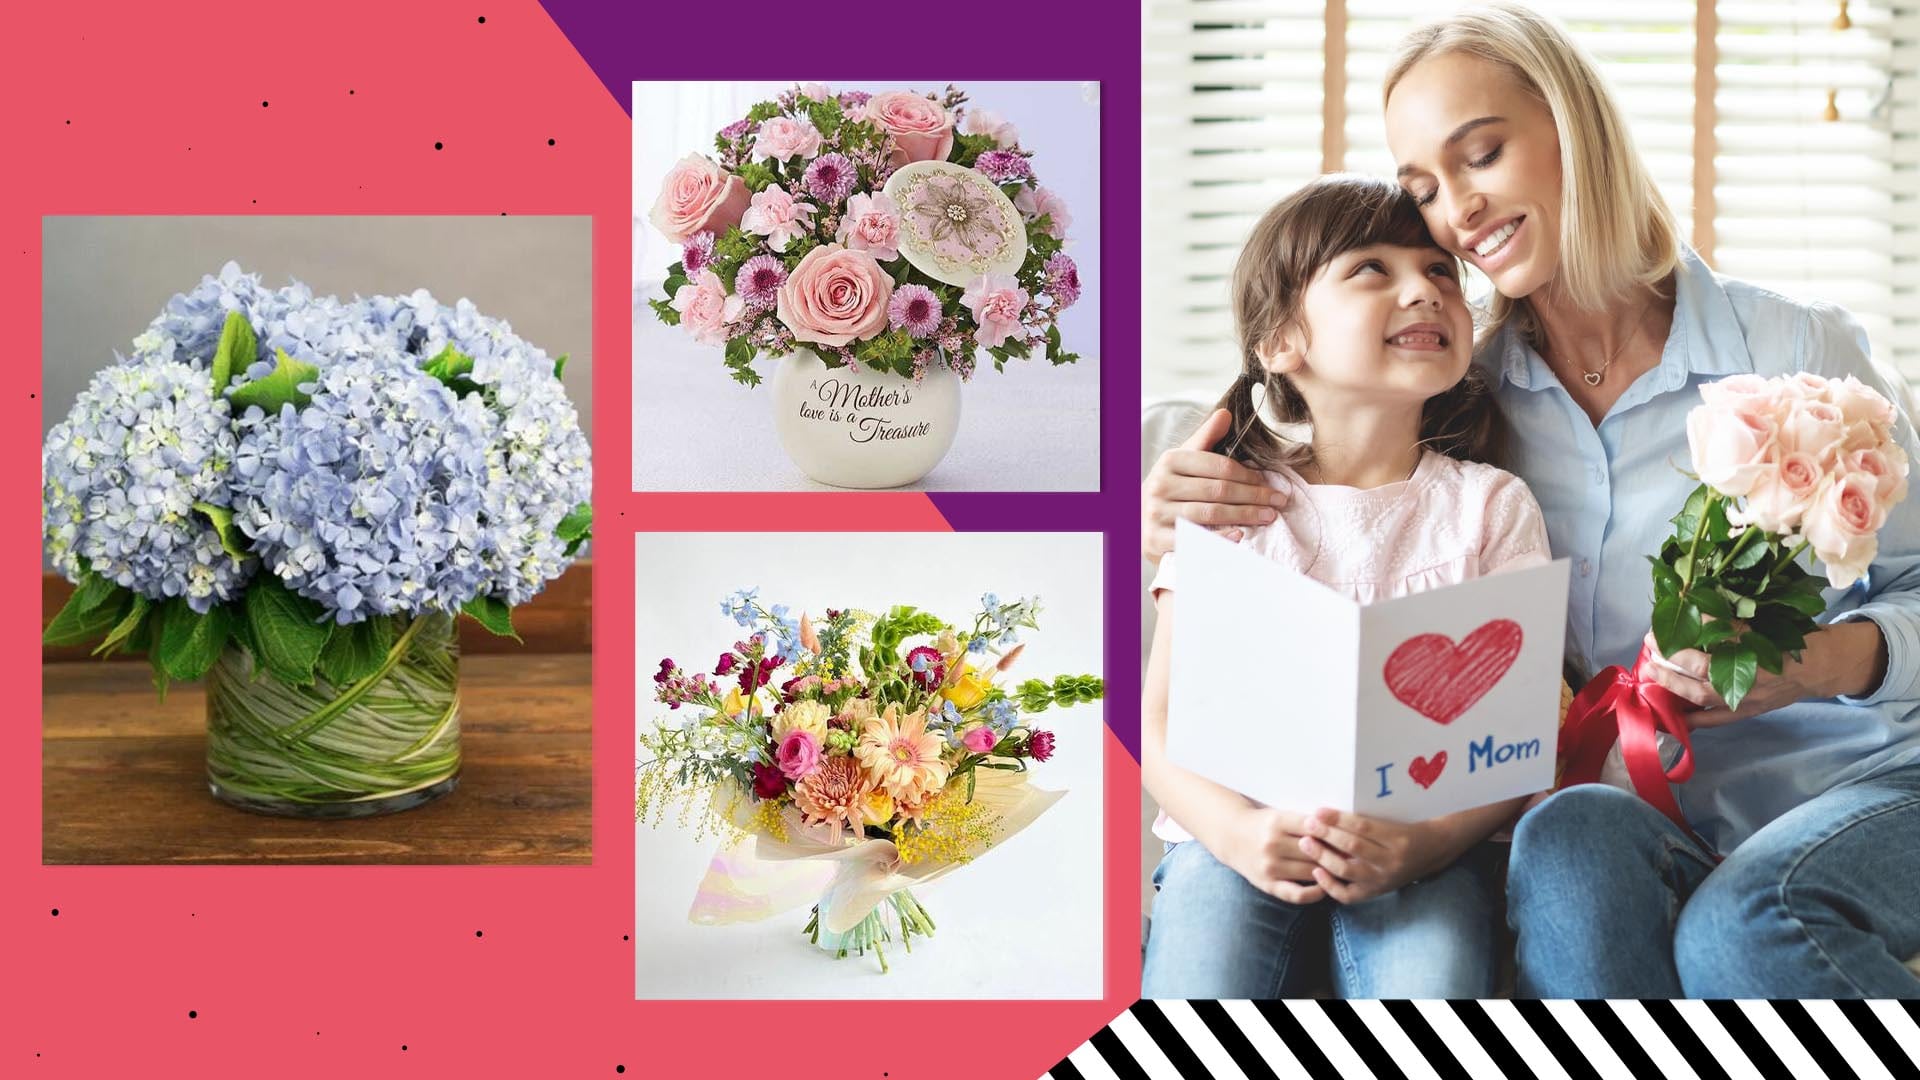 Flores para el Día de la Madre muy hermosas y a precios razonables